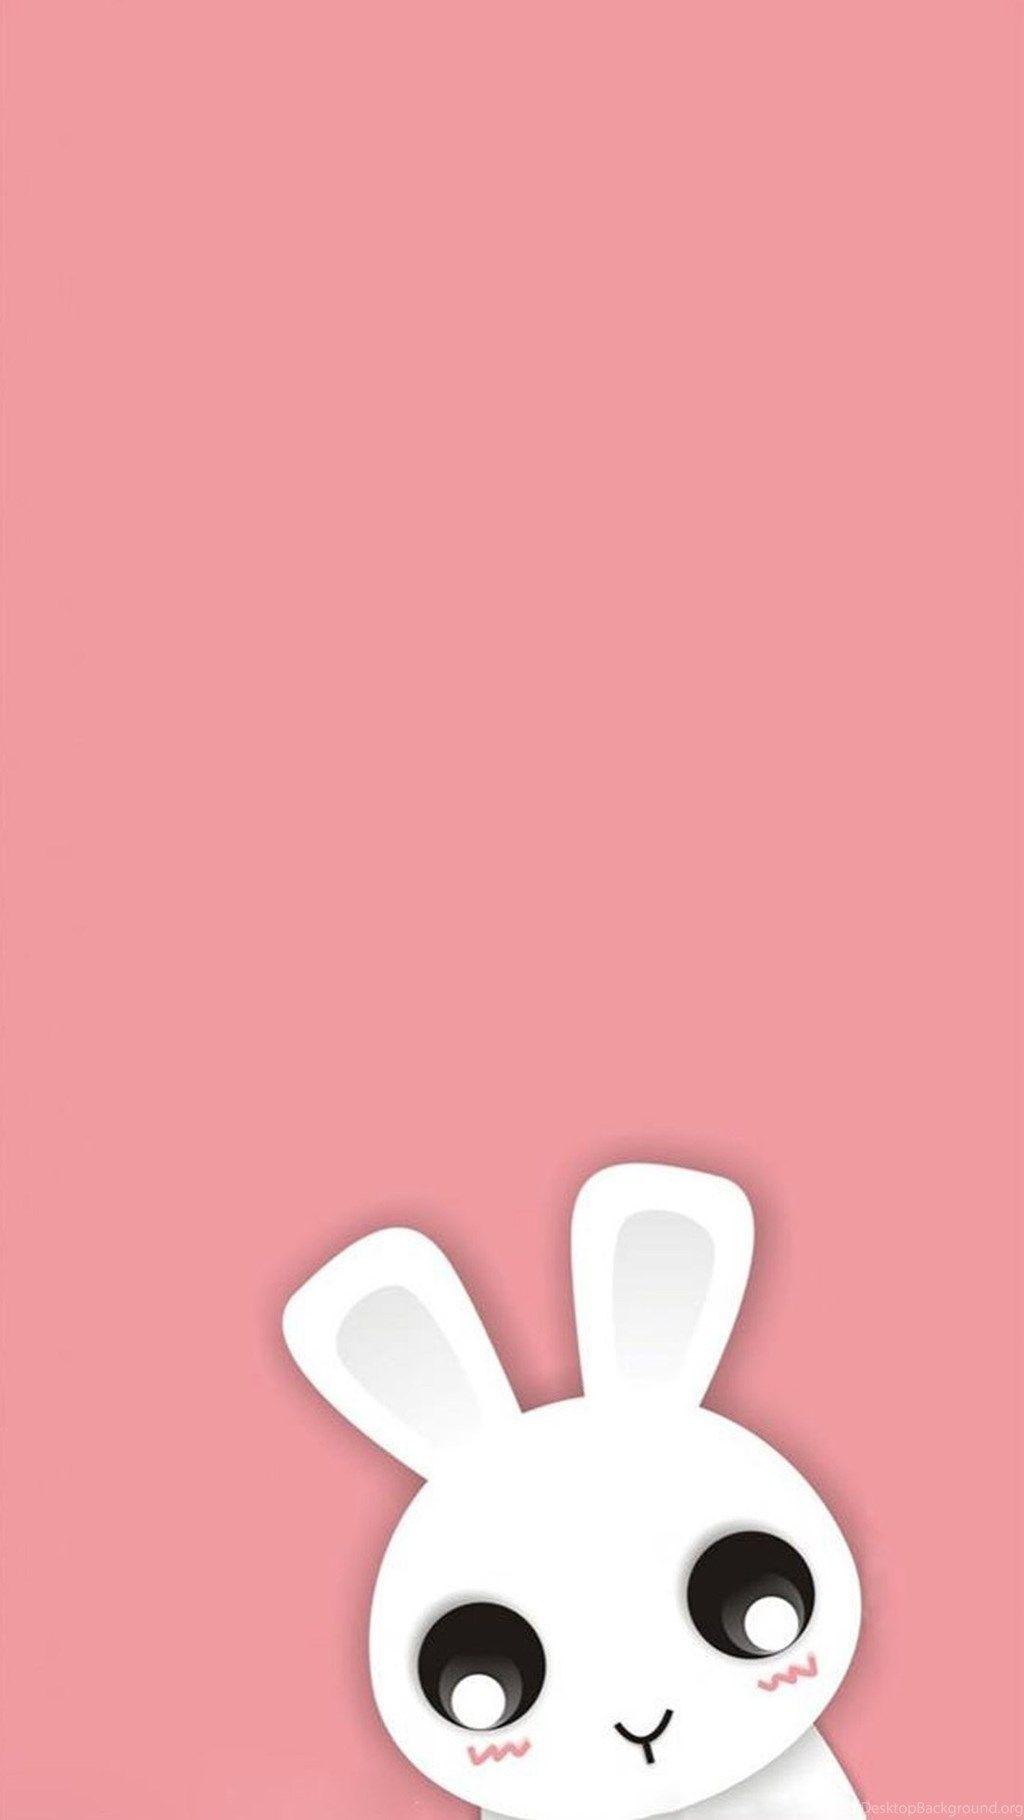 Cute Cartoon Bunny 10 Galaxy S5 Desktop Background